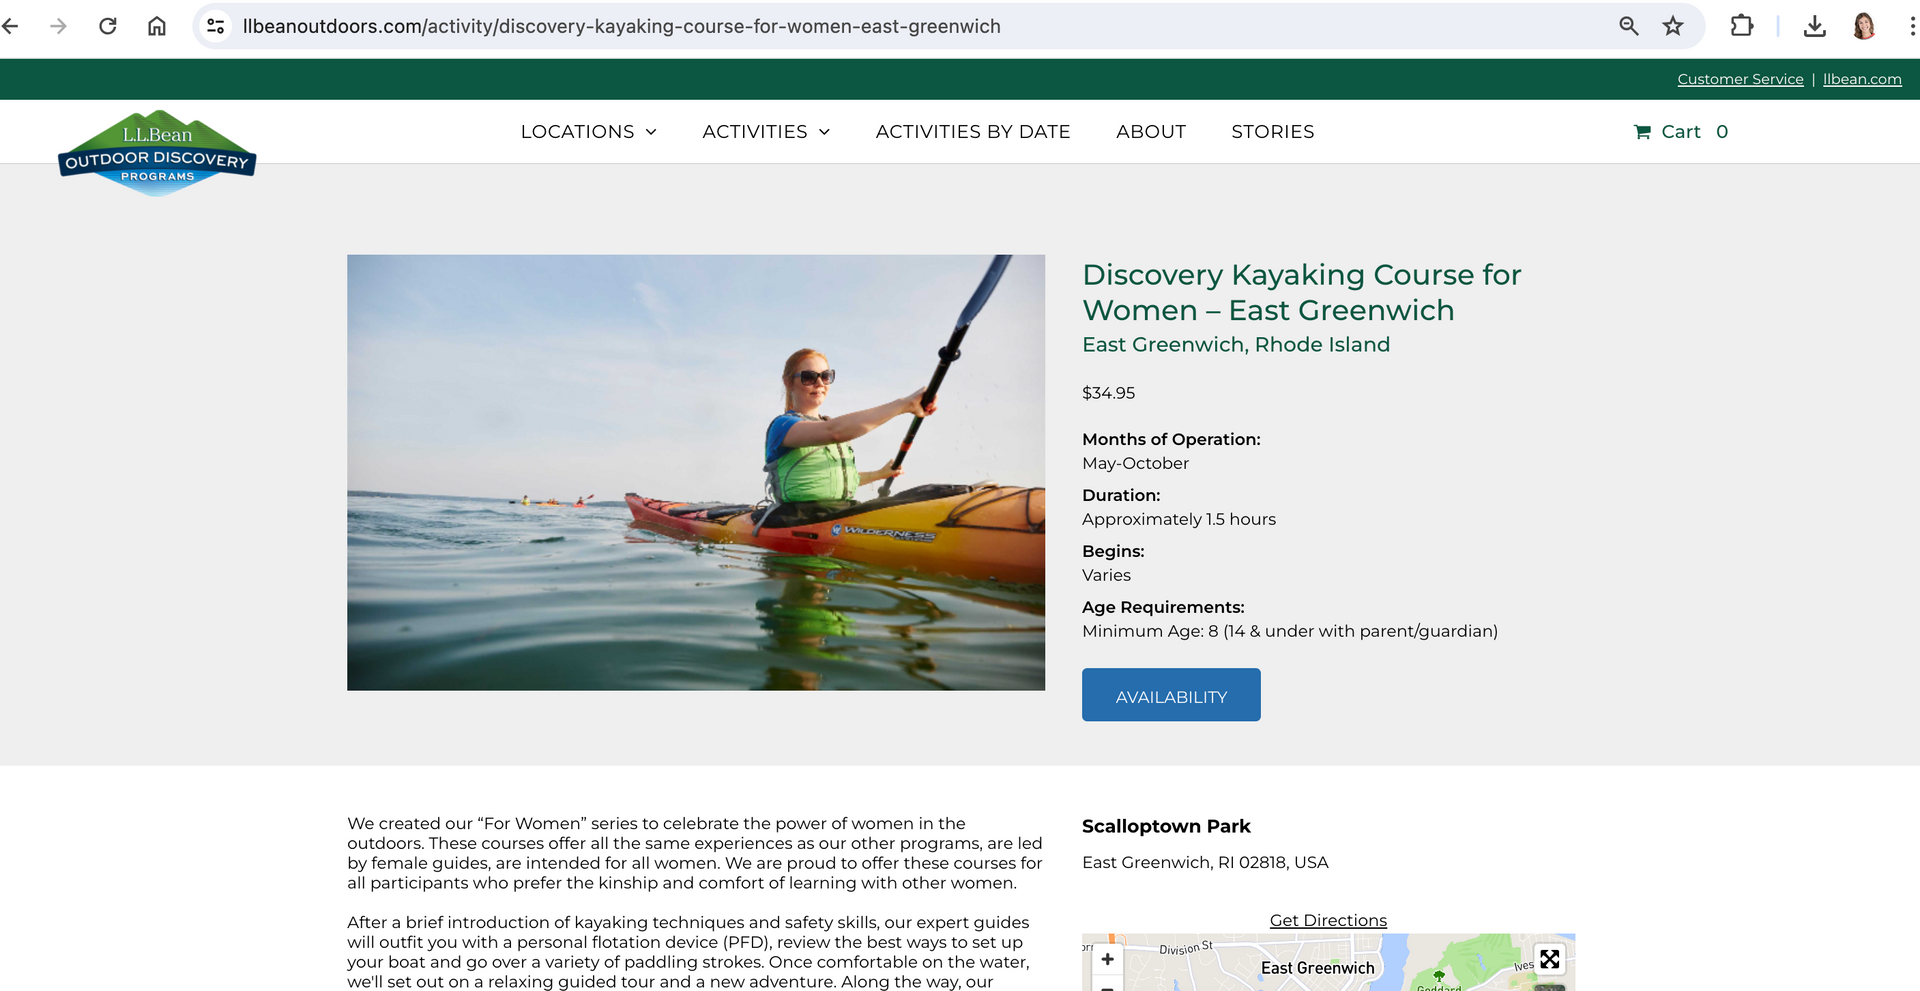 L.L. Bean Discovery Program Kayak Tour Page for Women